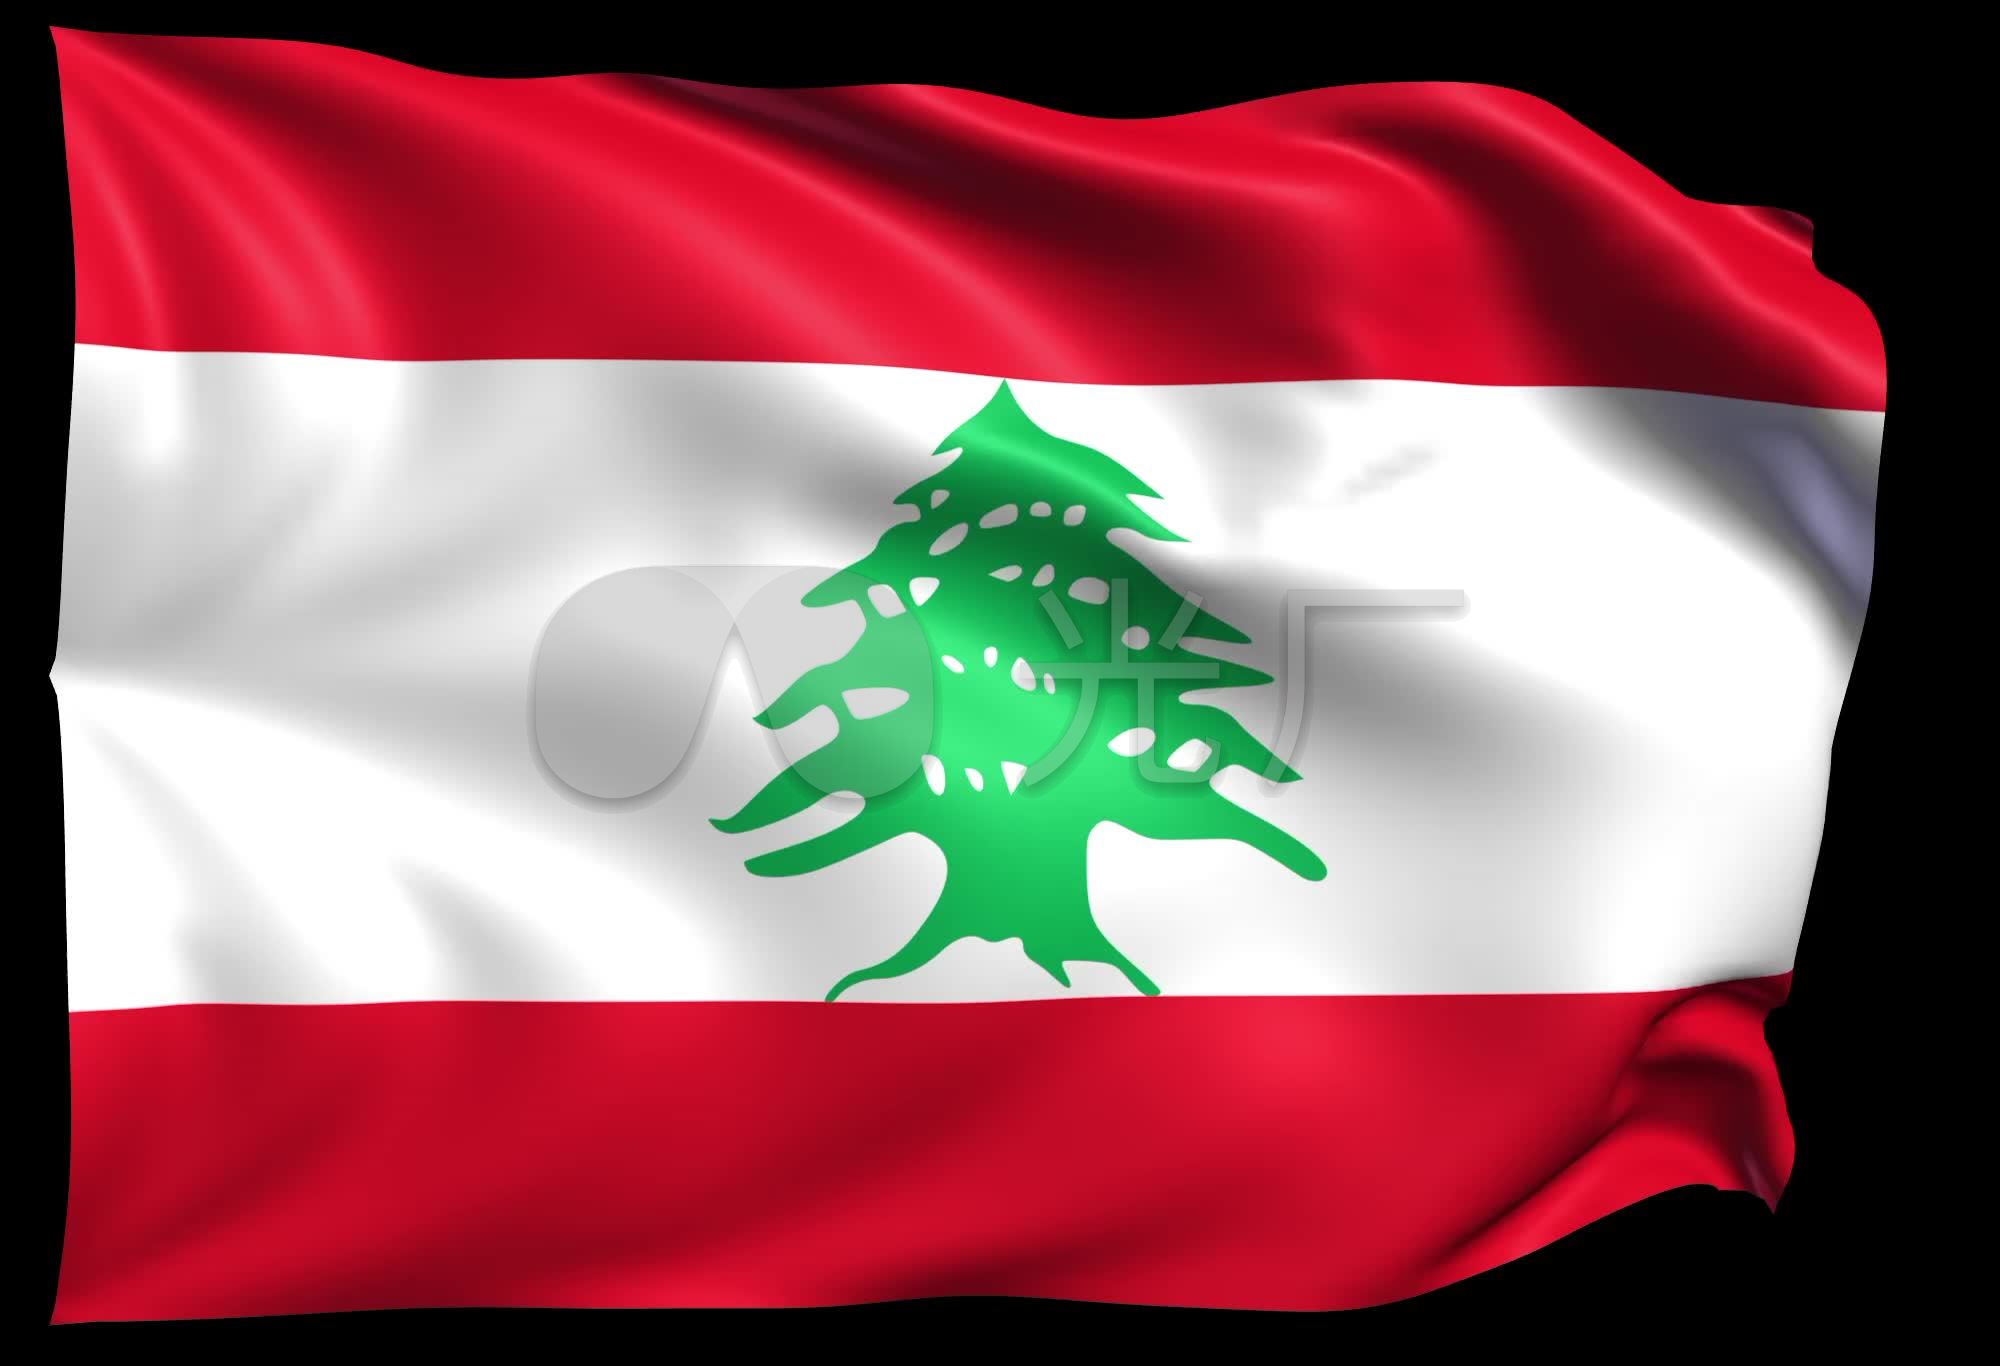 黎巴嫩共和国国旗